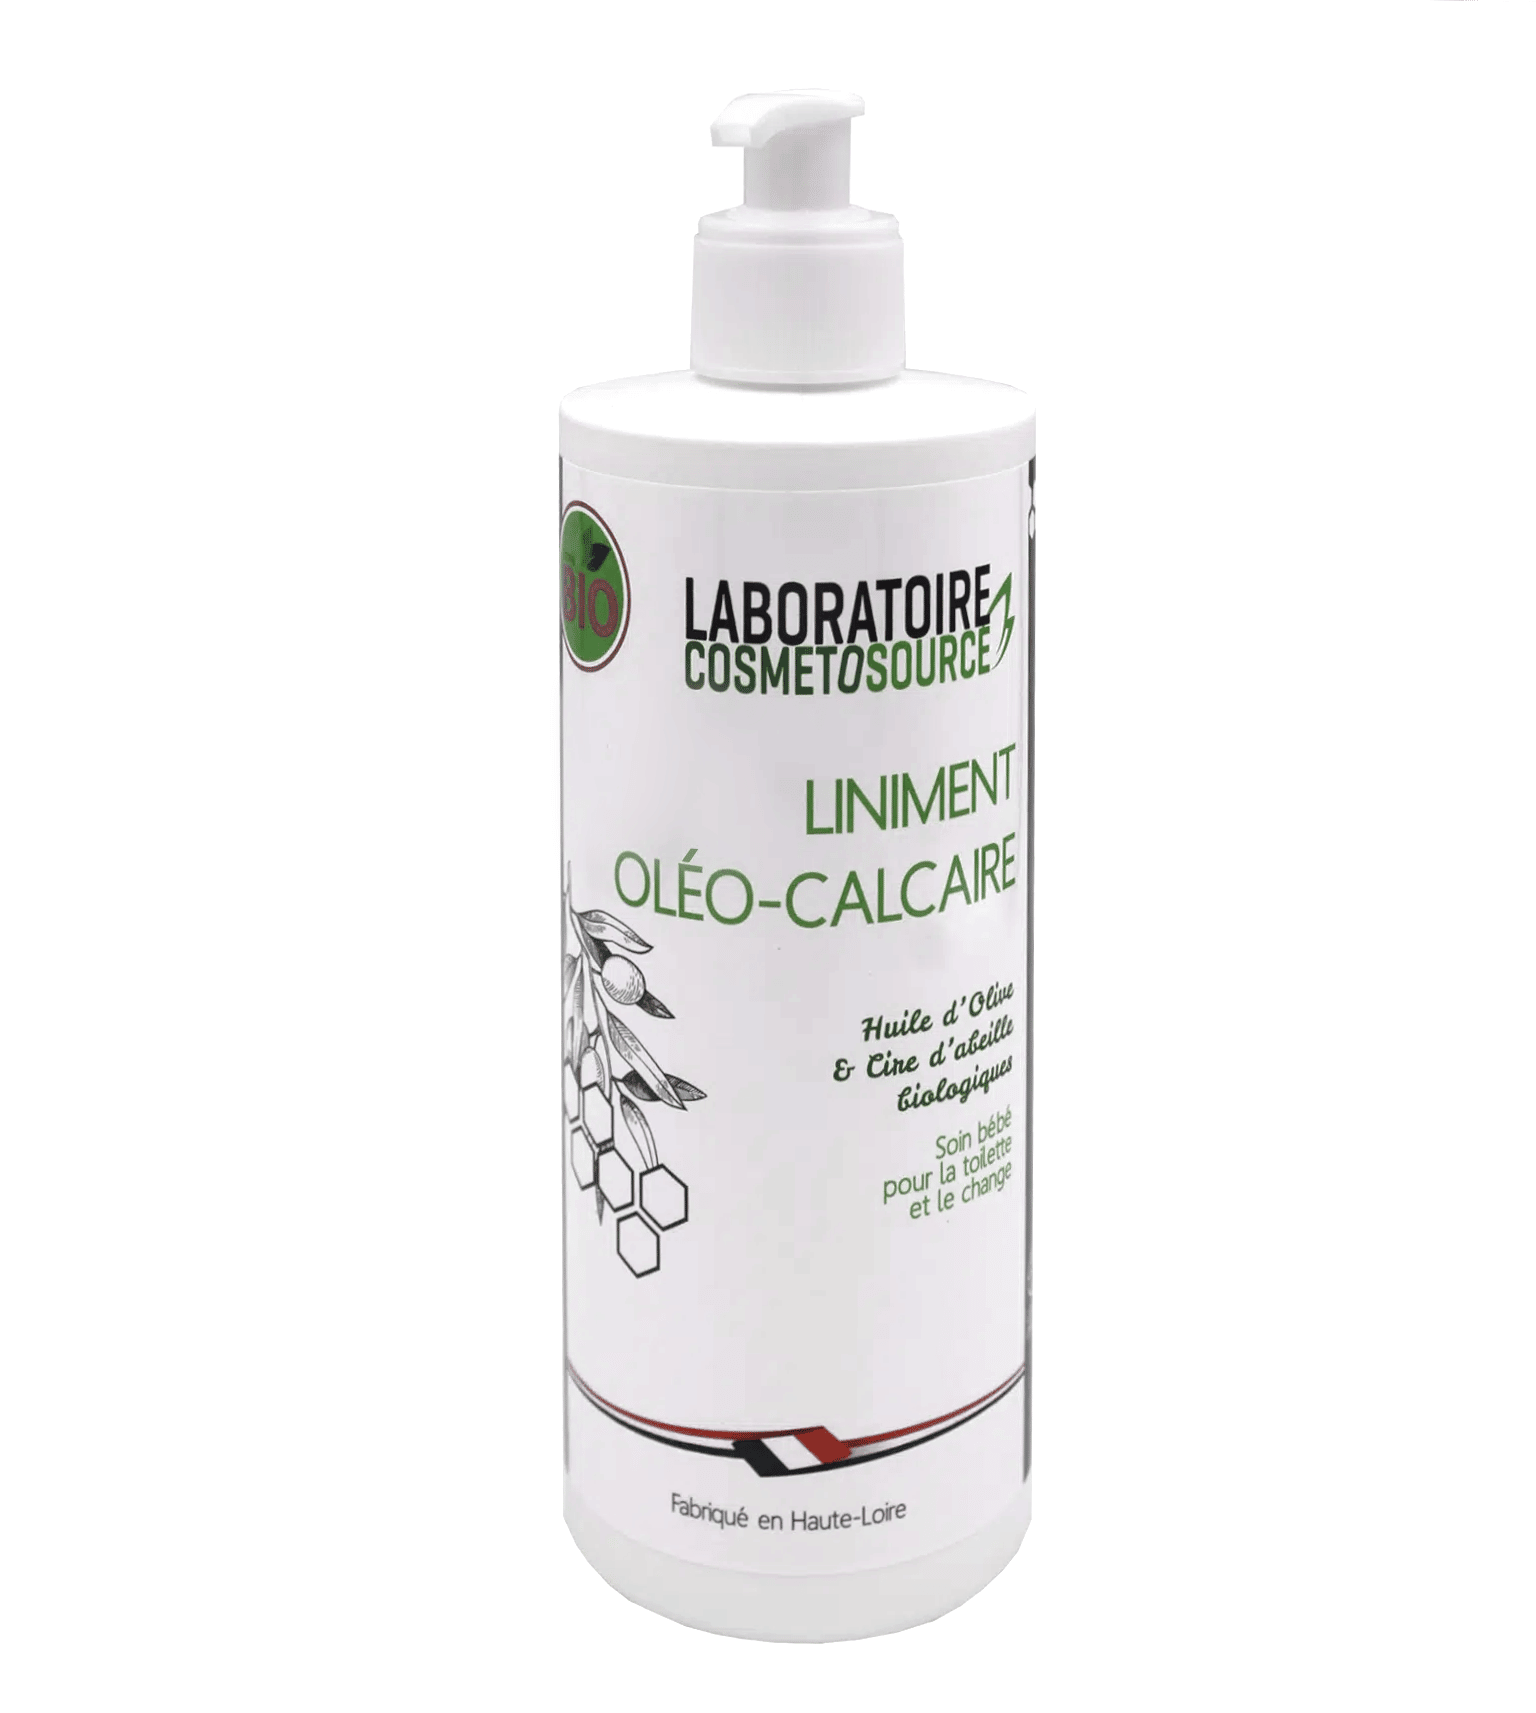 Le liniment oléo-calcaire – Un soin 3 en 1 qui nettoie, prévient